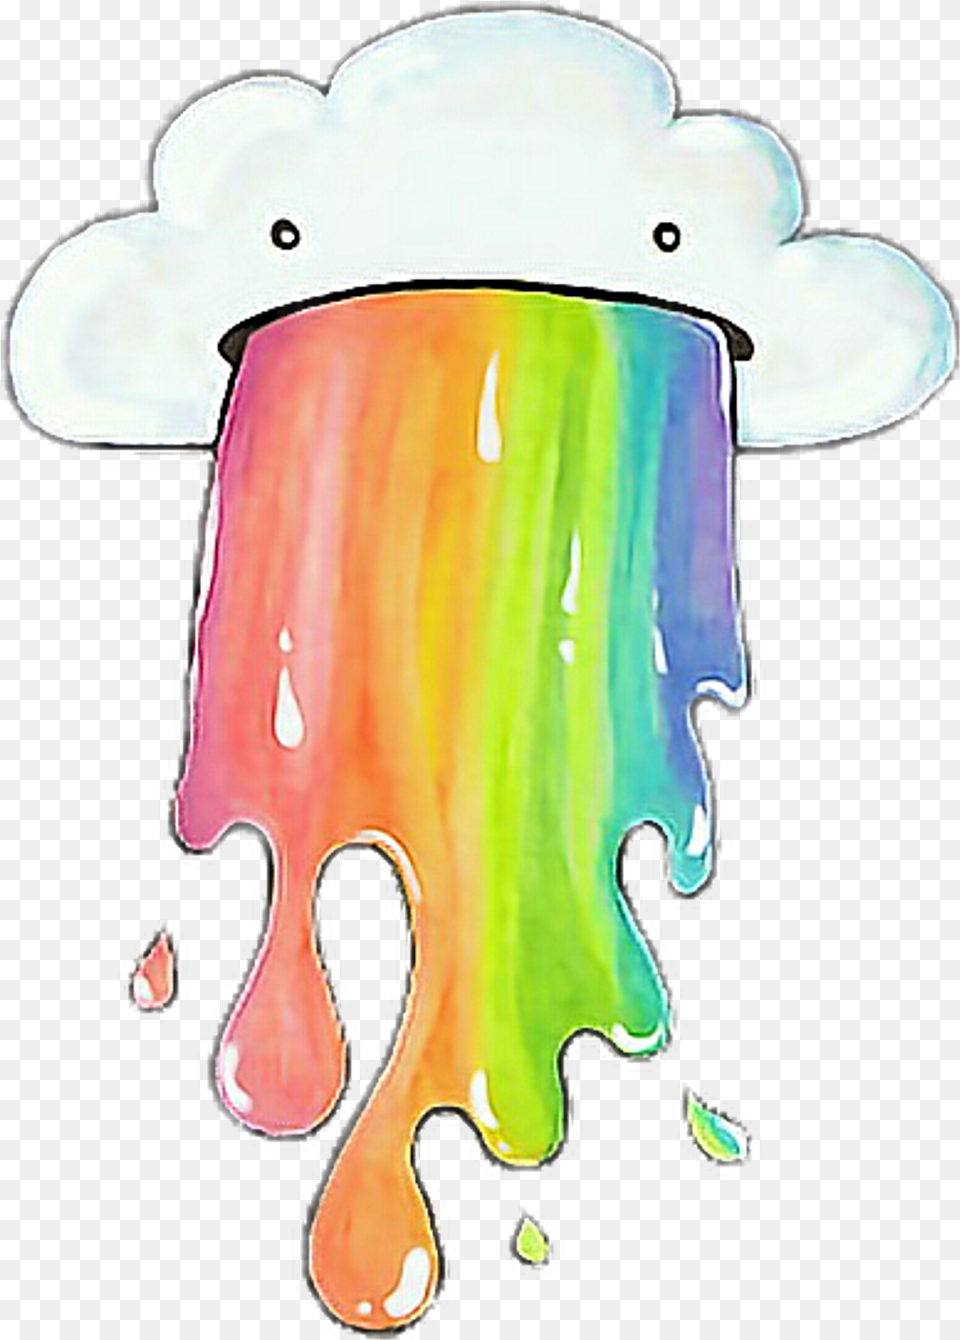 Vintage Rainbow Overlays Tumblr Sticker Cute Cloud Barfing Rainbows, Art, Animal, Sea Life Png